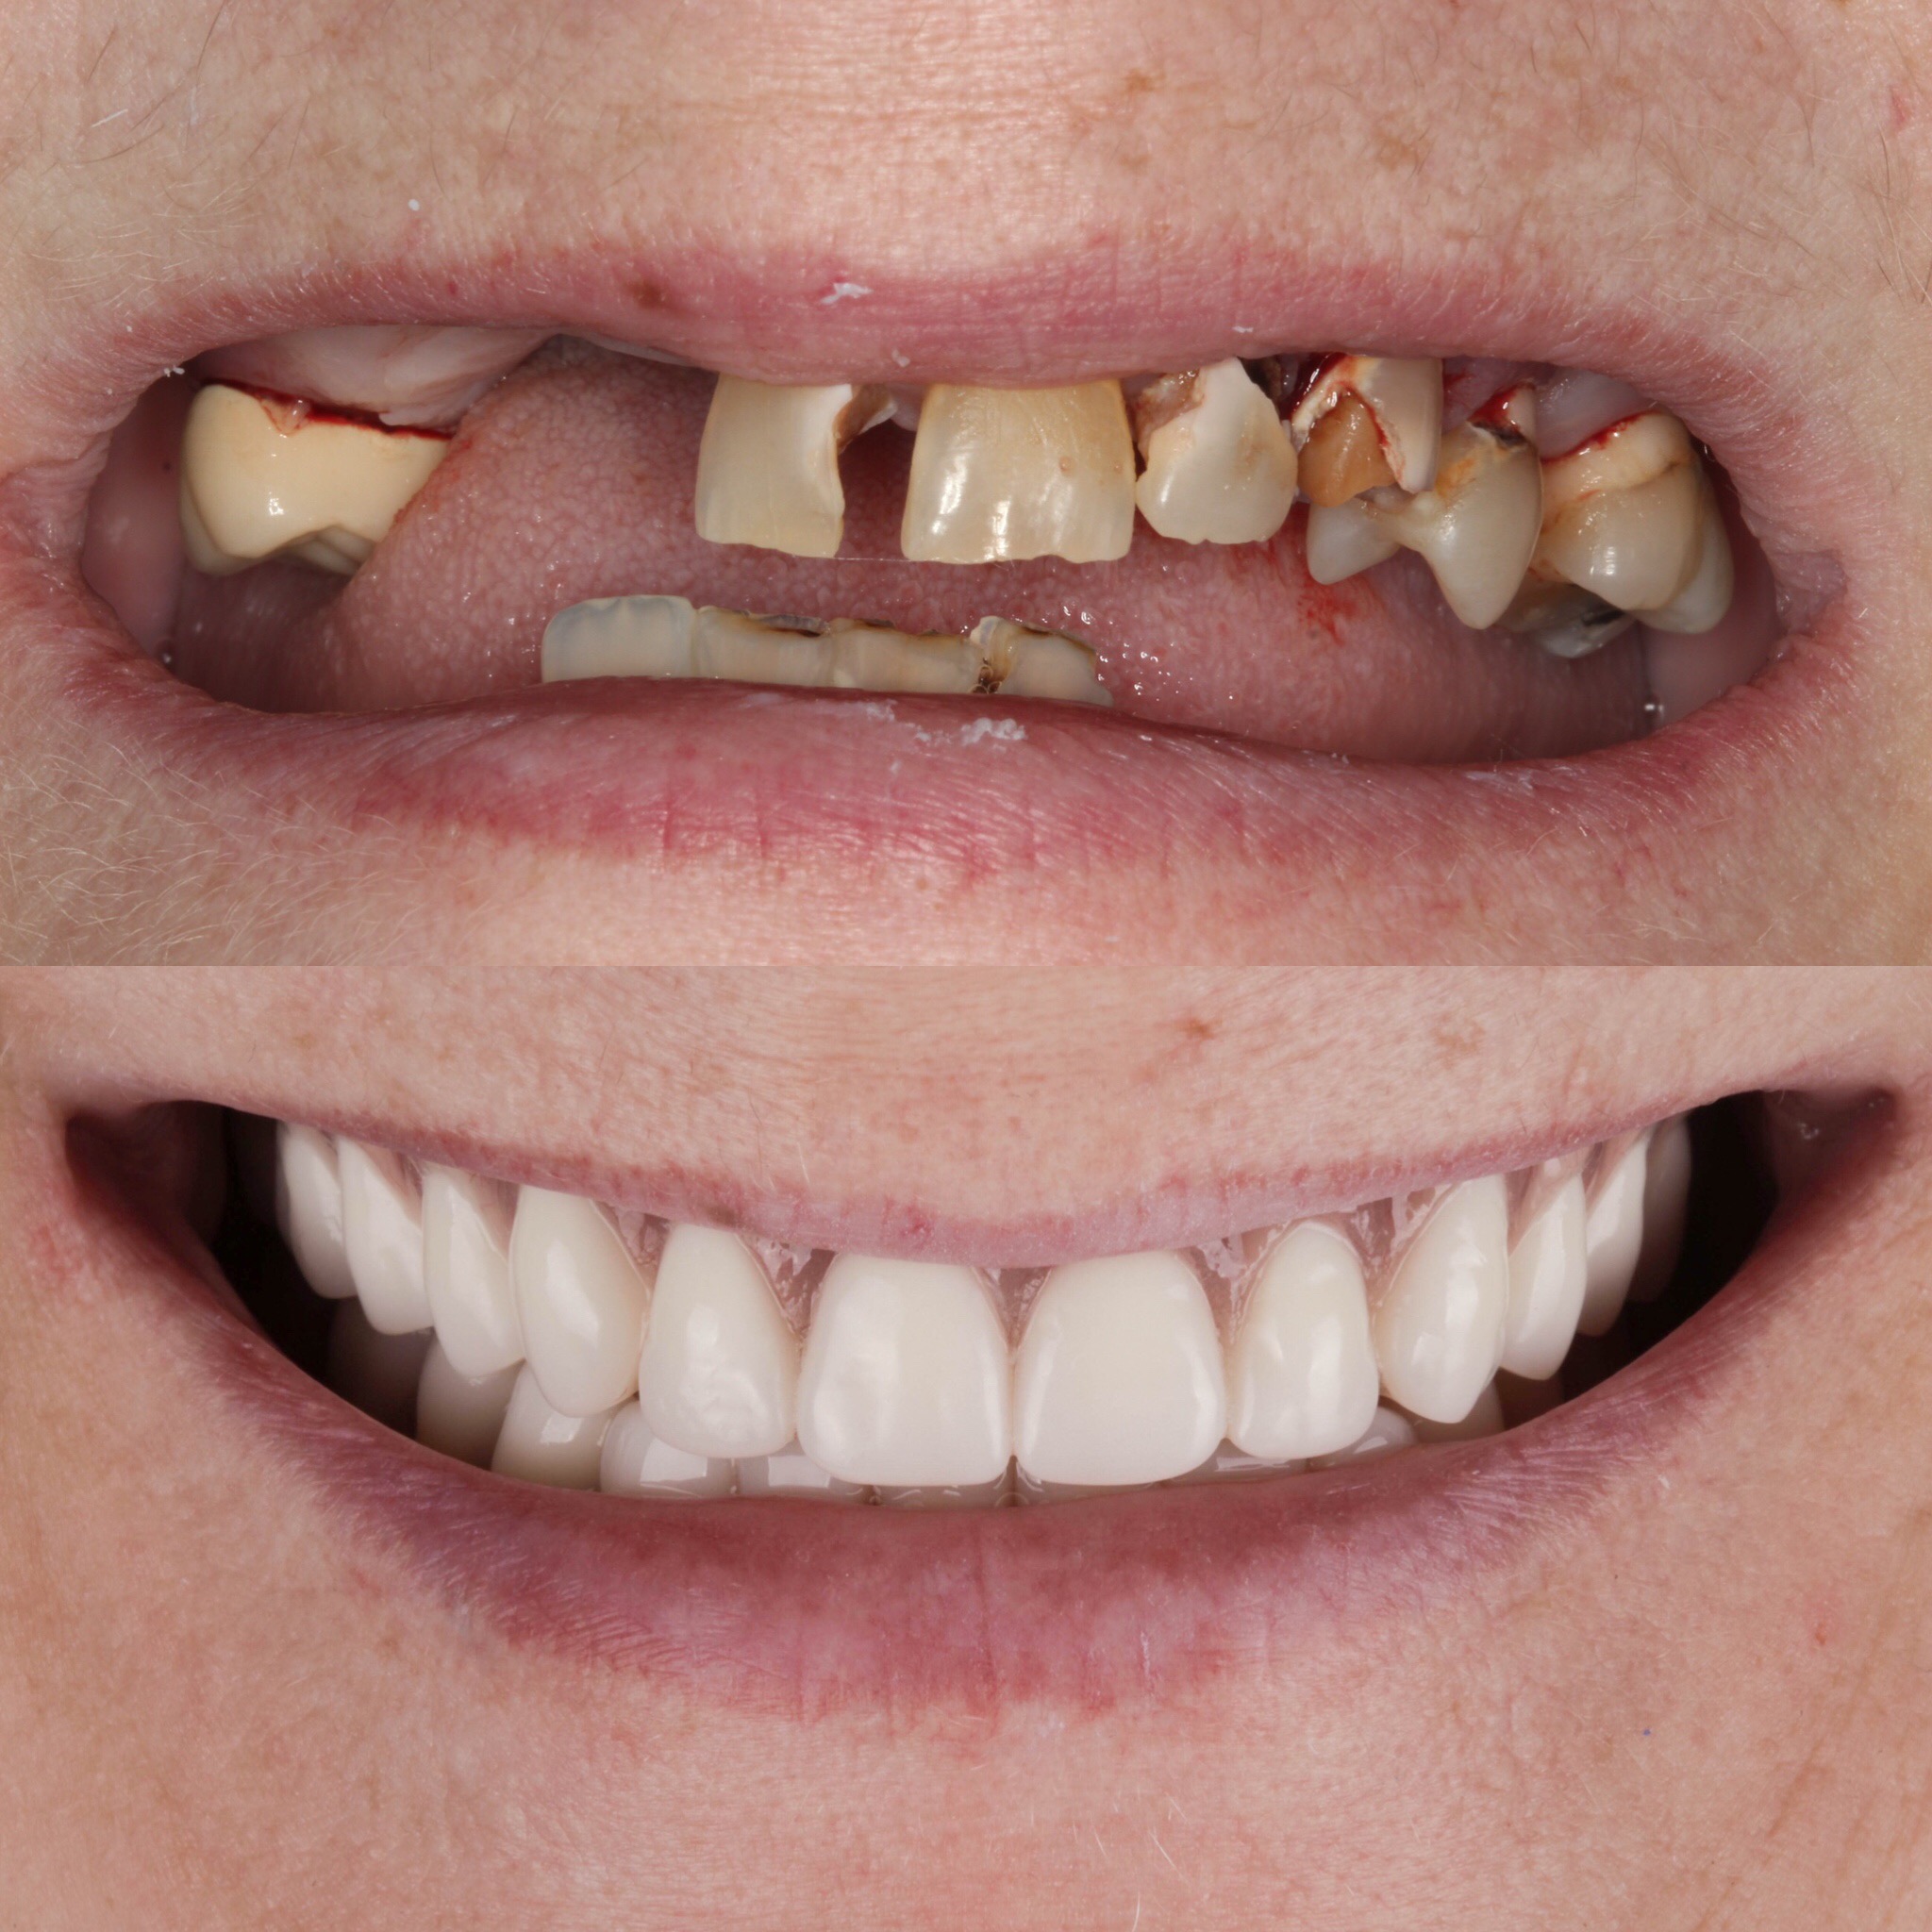 Dentures replacing missing teeth